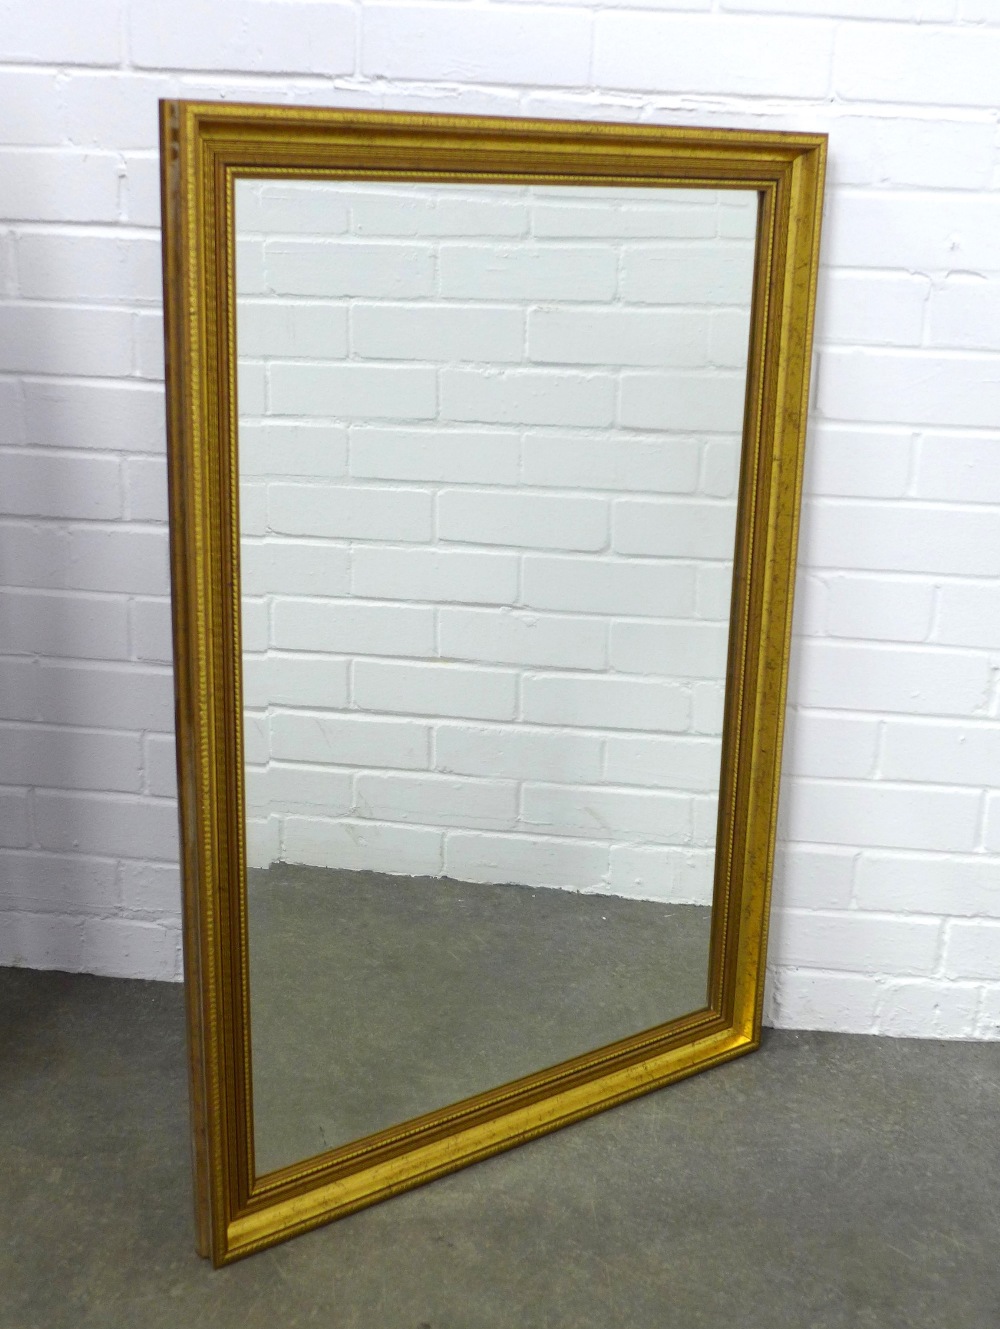 Rectangular gilt framed wall mirror, 97 x 66cm.